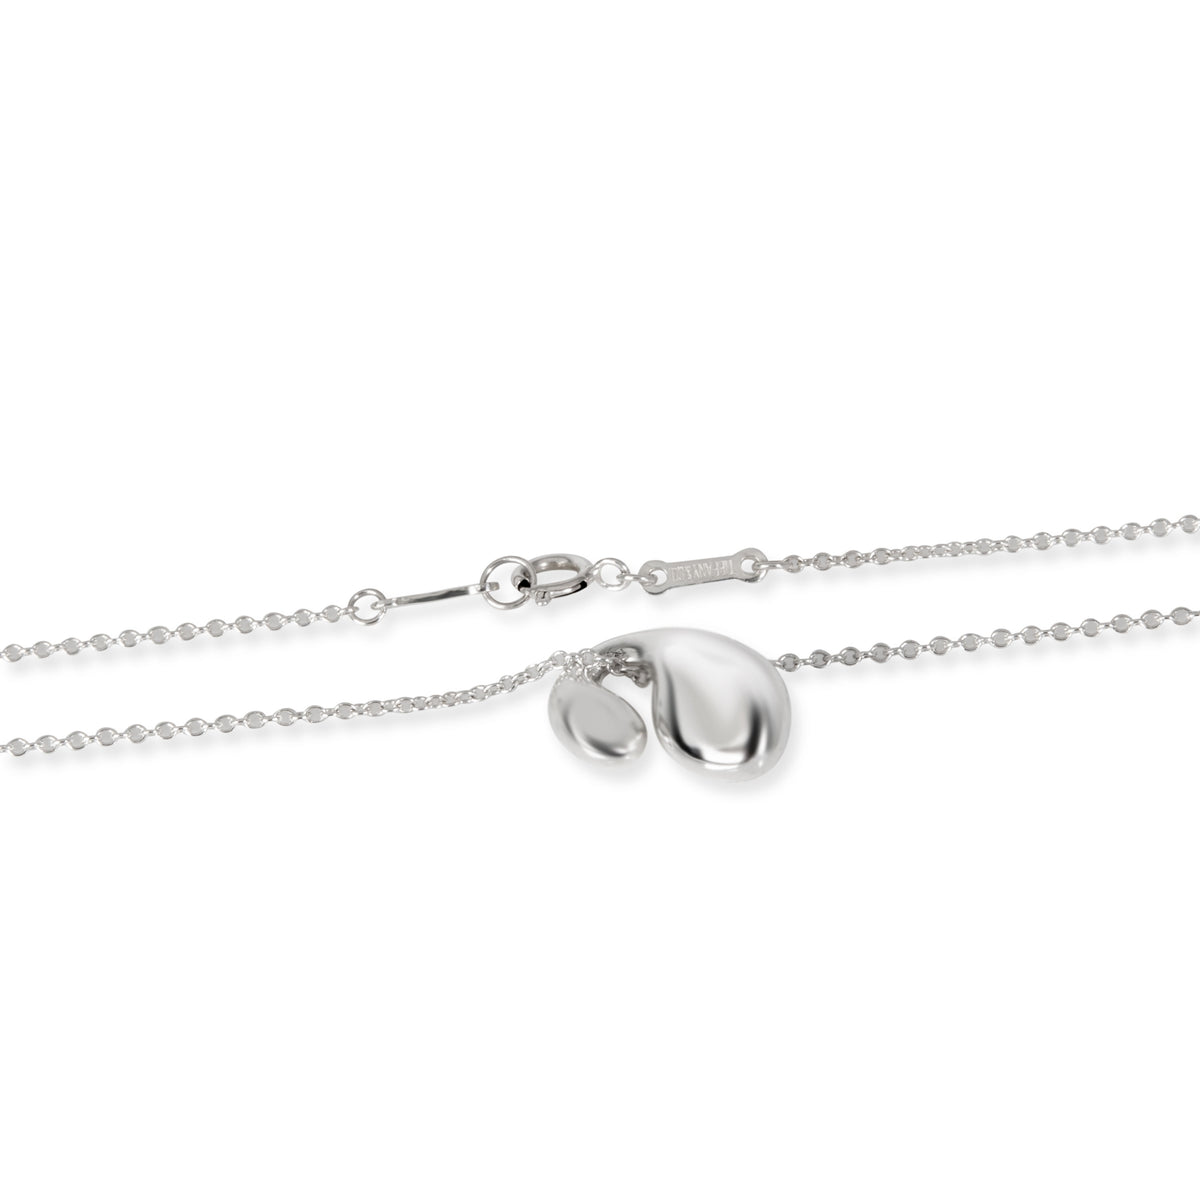 Tiffany & Co. Elsa Peretti Double Teardrop Necklace in Sterling Silver